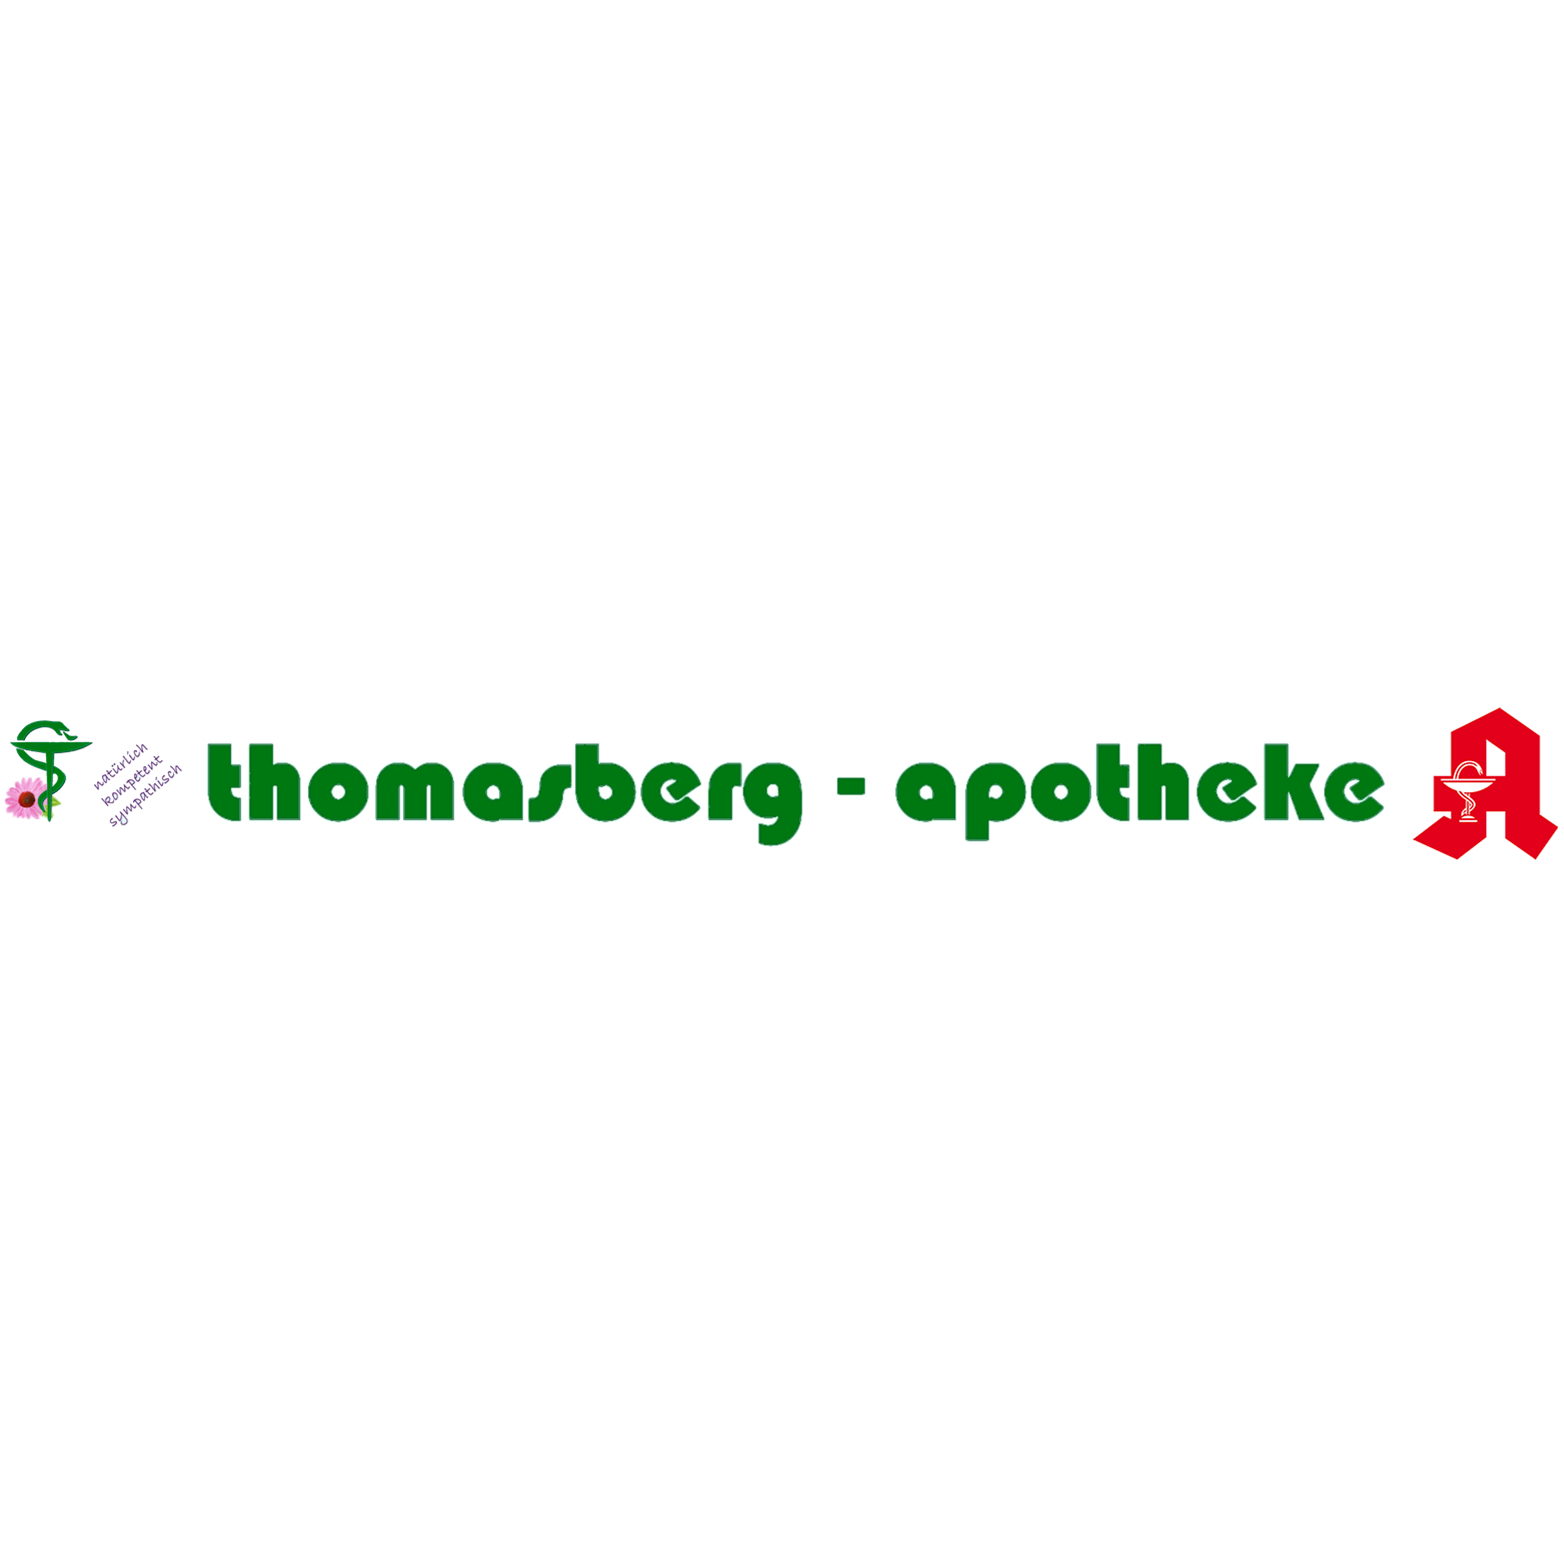 Logo der Thomasberg-Apotheke